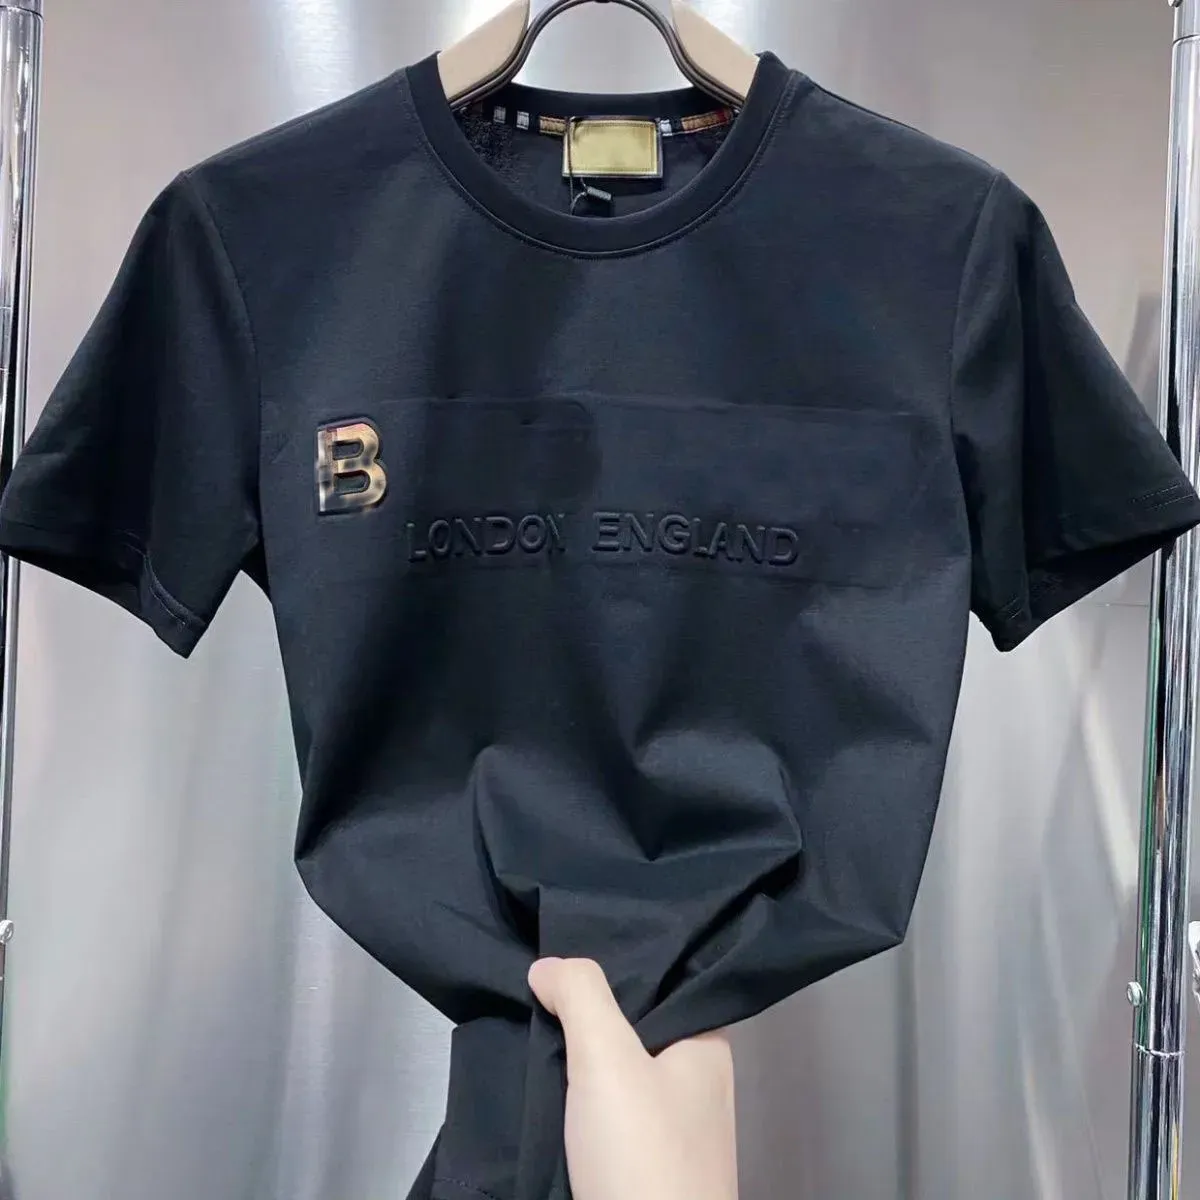 Herrendesigner T-Shirt Man T-Shirt Frauen Baumwolle Hemden T-Shirts Einfacher schwarzes kurzäräres Baumwoll-T-Shirt mit modischen Buchstaben Print Top Herrenkleidung